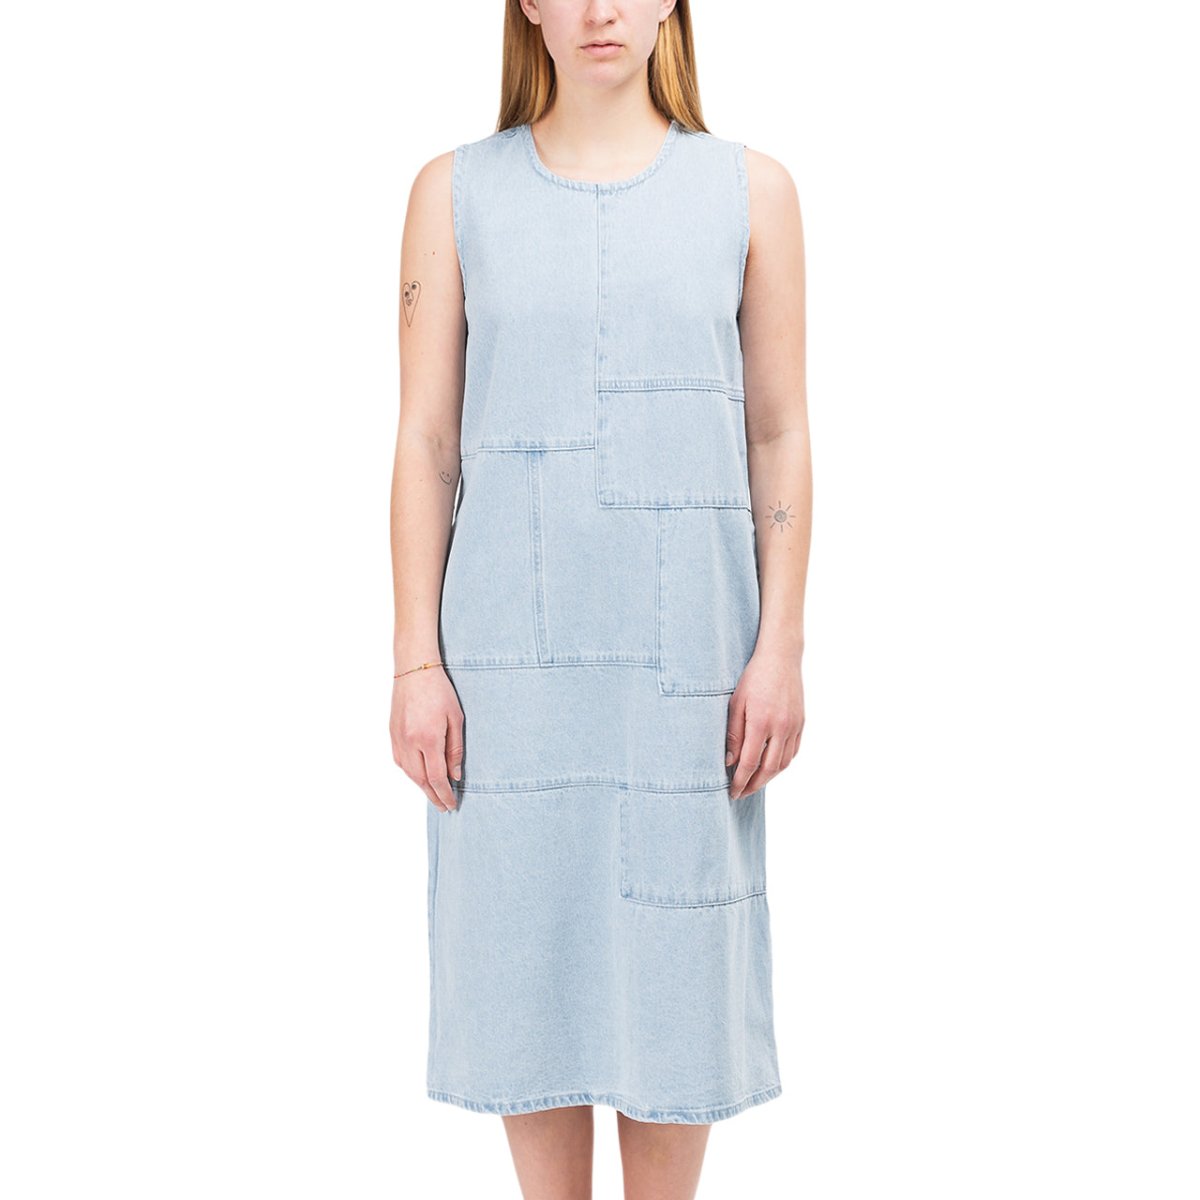 Stüssy WMNS Webster Dress (Hellblau)  - Allike Store